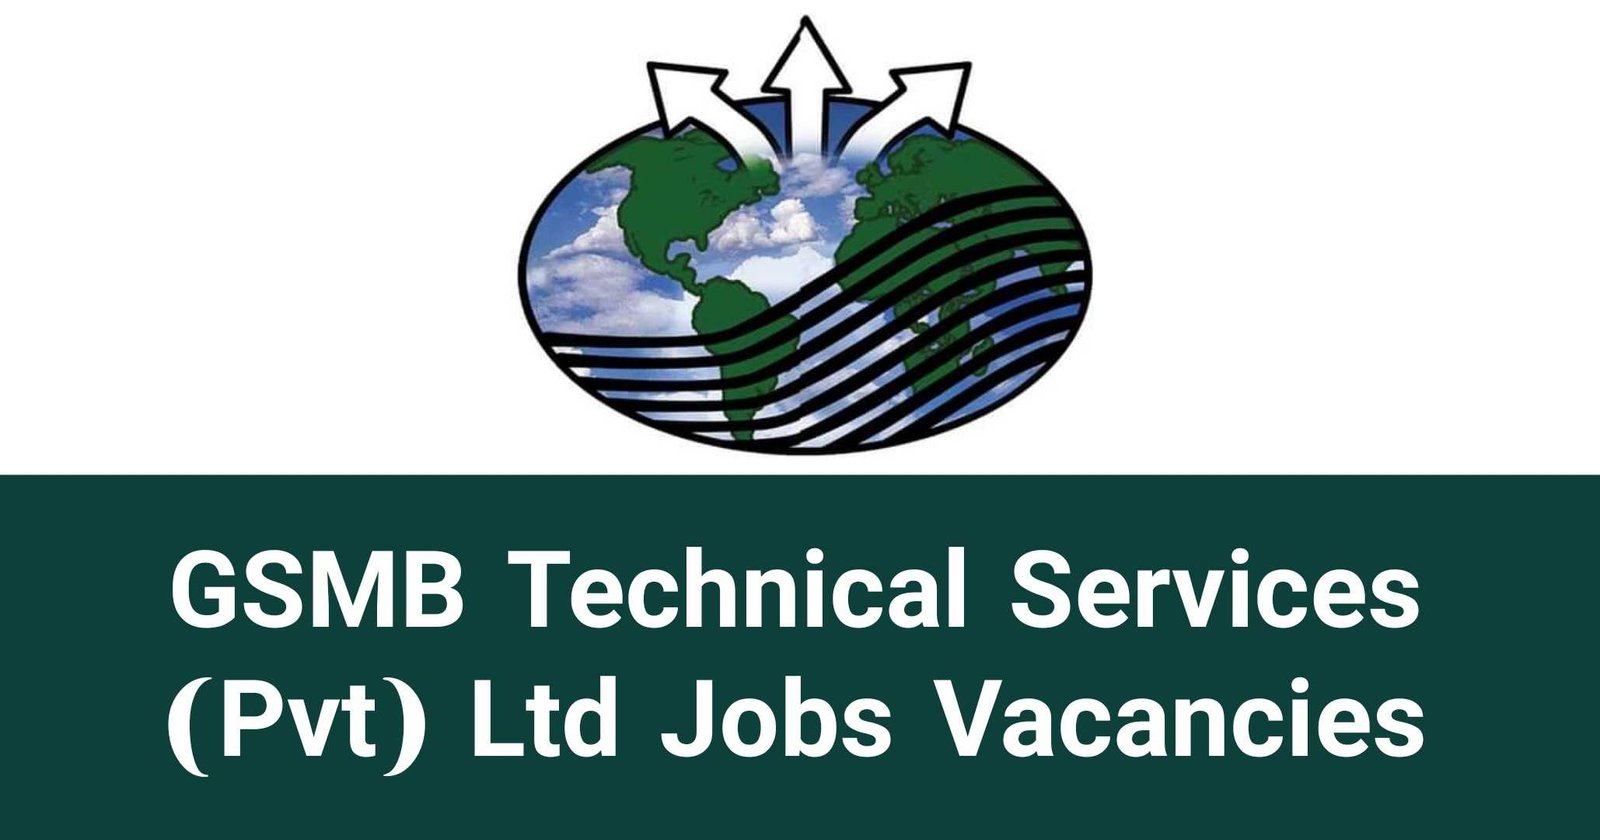 GSMB Technical Services (Pvt) Ltd Jobs Vacancies